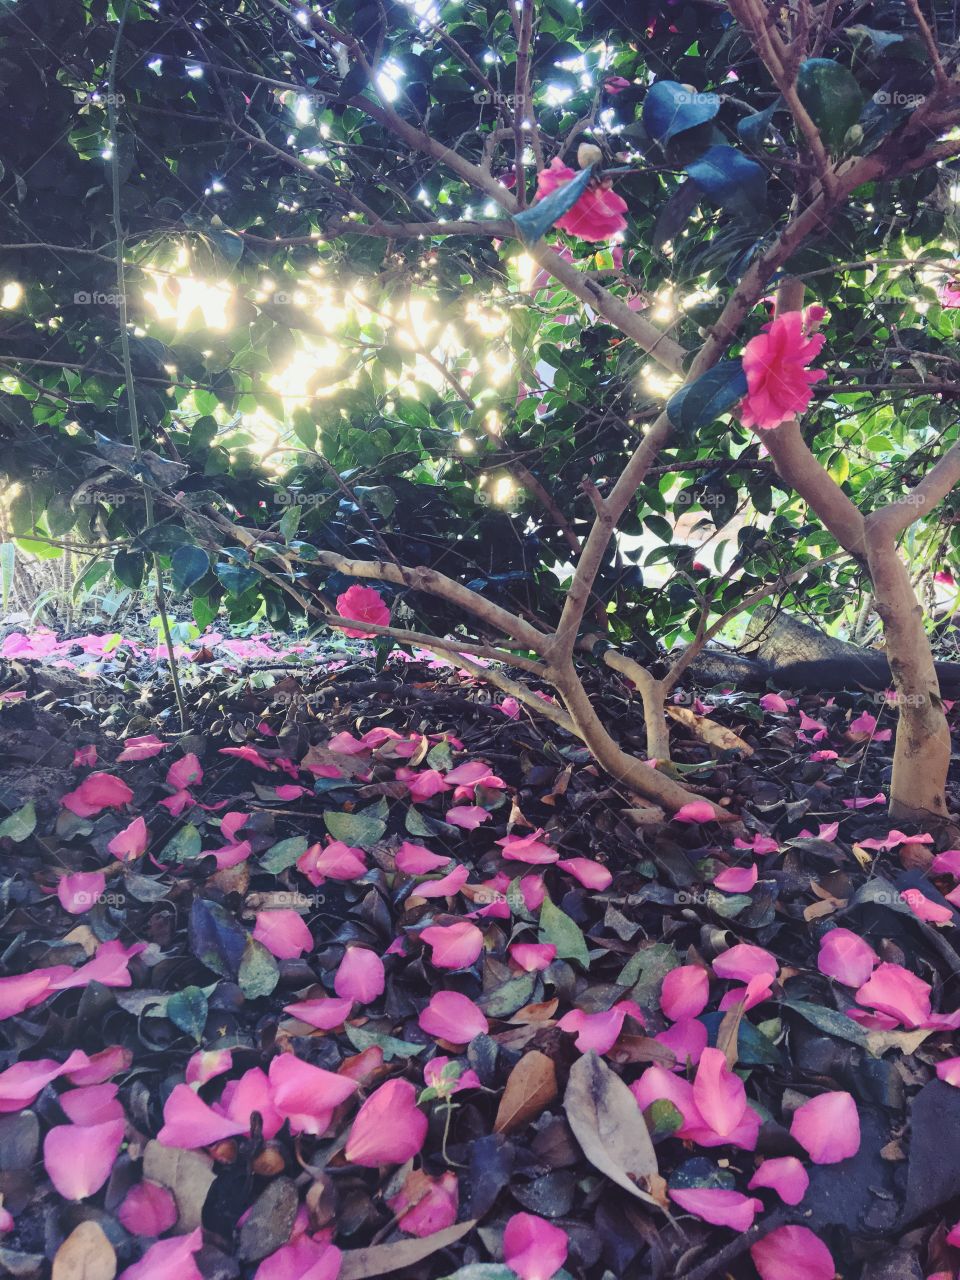 Fallen pink petals from tree